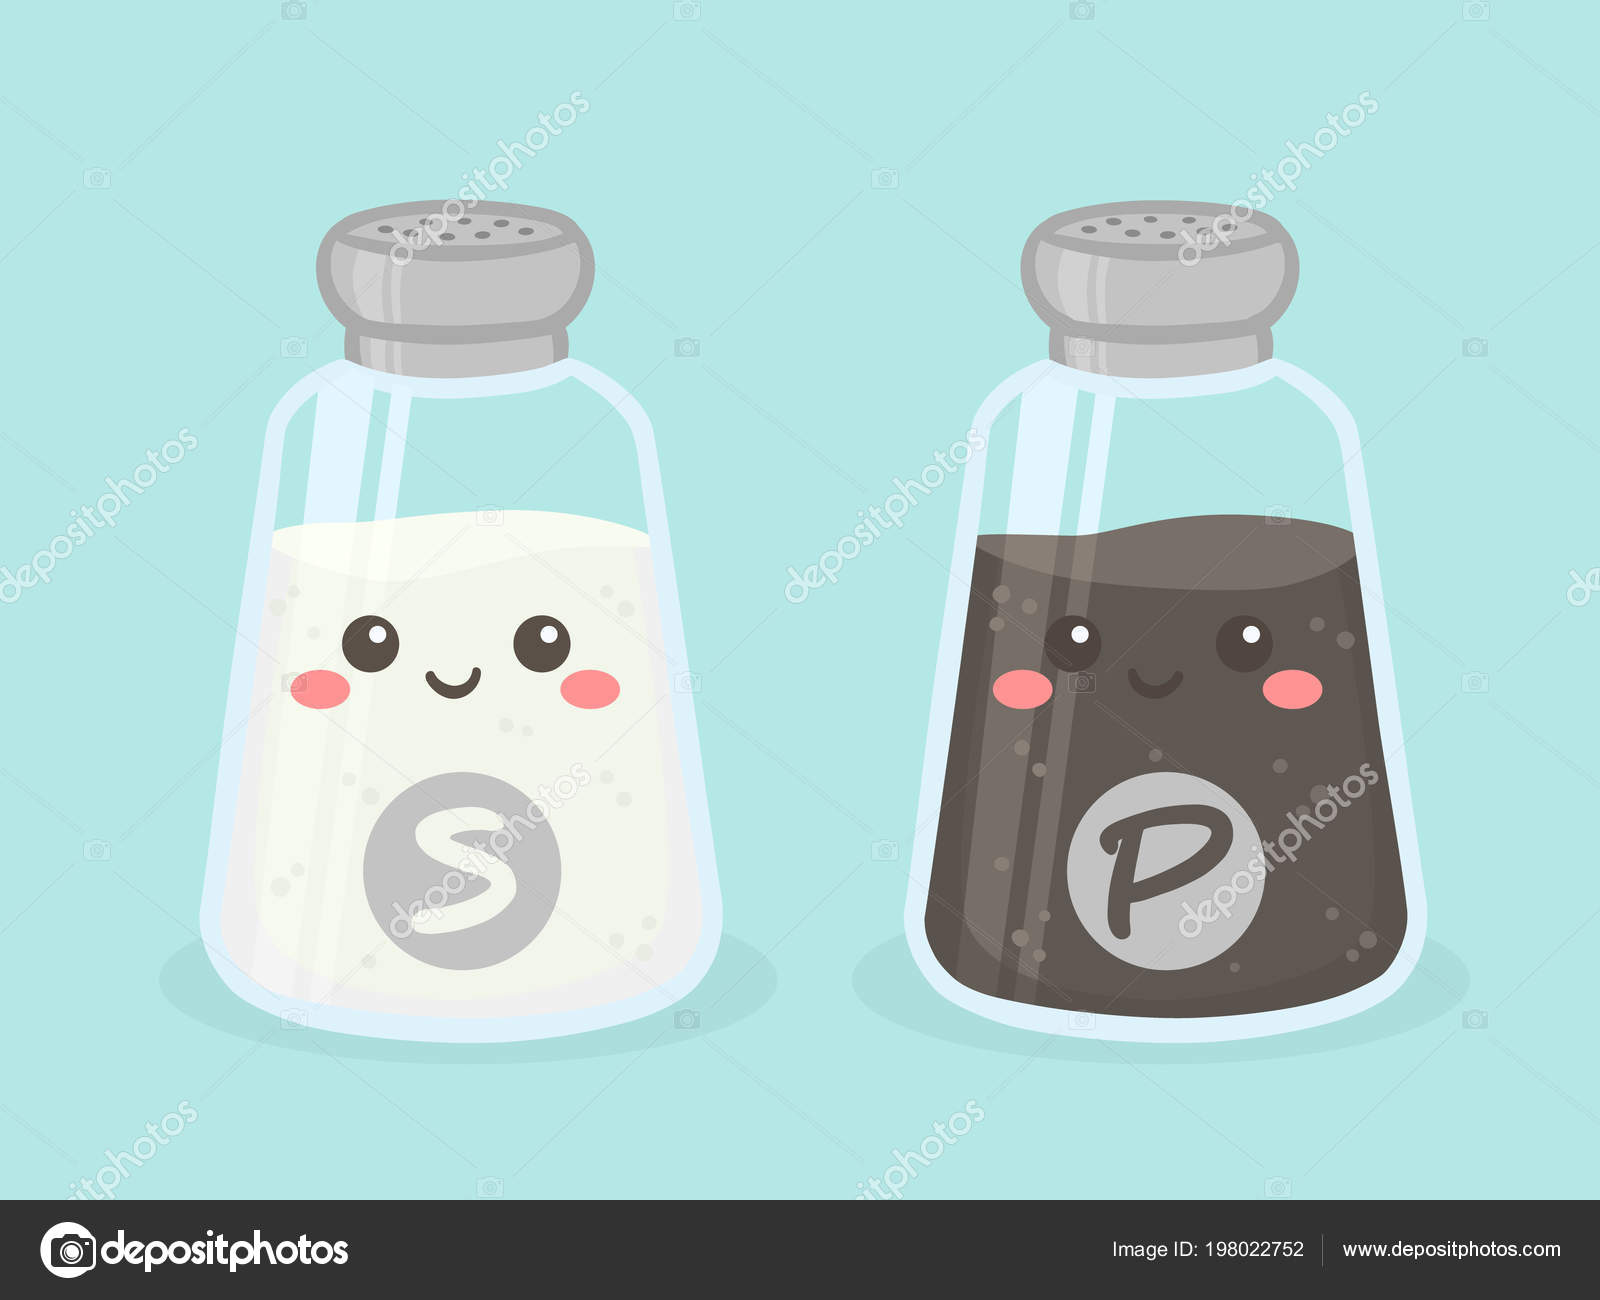 https://st4.depositphotos.com/4778169/19802/v/1600/depositphotos_198022752-stock-illustration-cute-salt-pepper-shaker-bottle.jpg